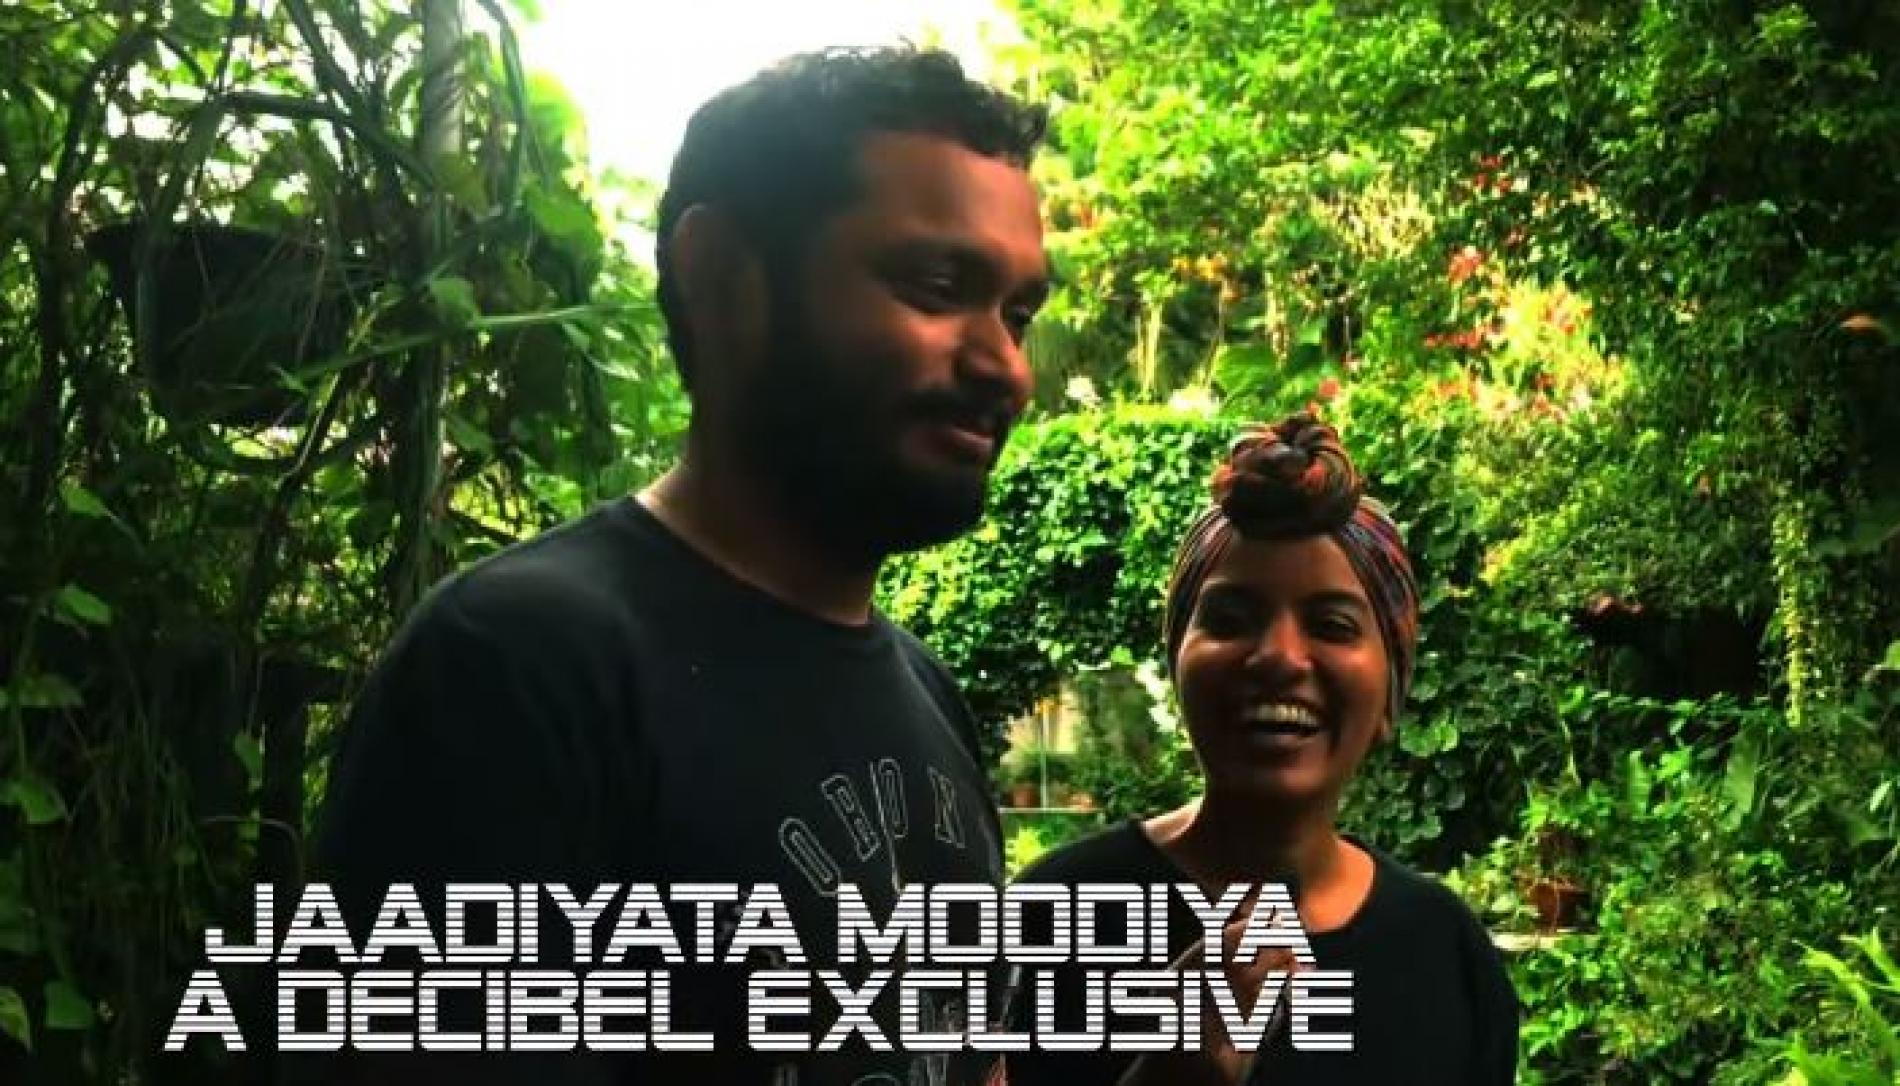 Get To Know Jaadiyata Moodiya!